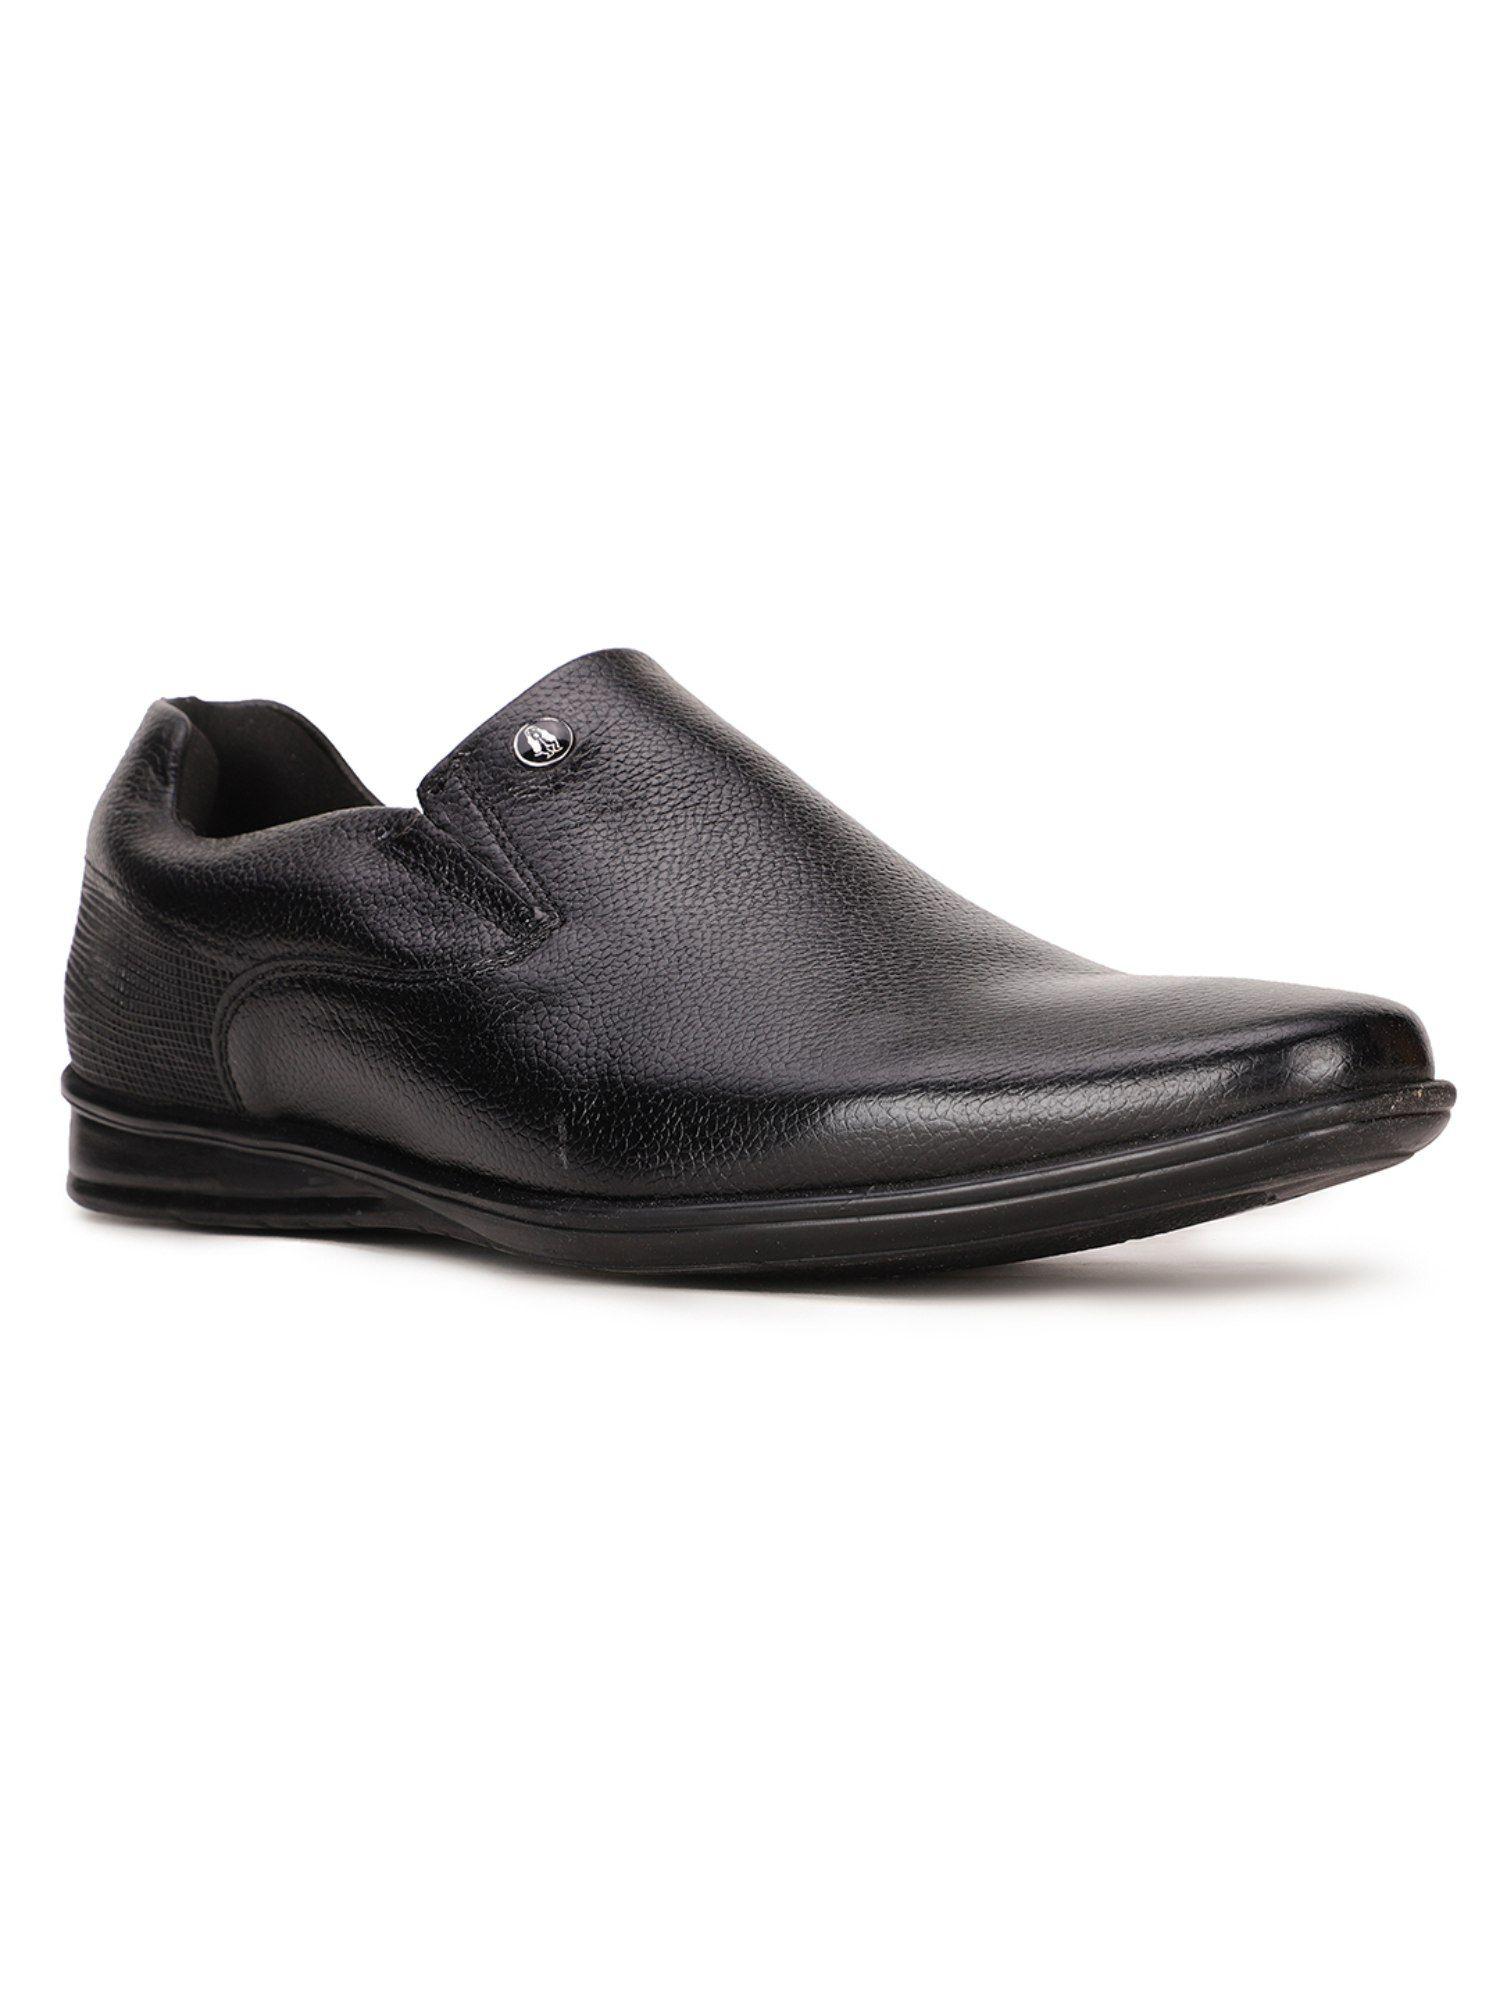 mens slip on formal oxfords shoes black